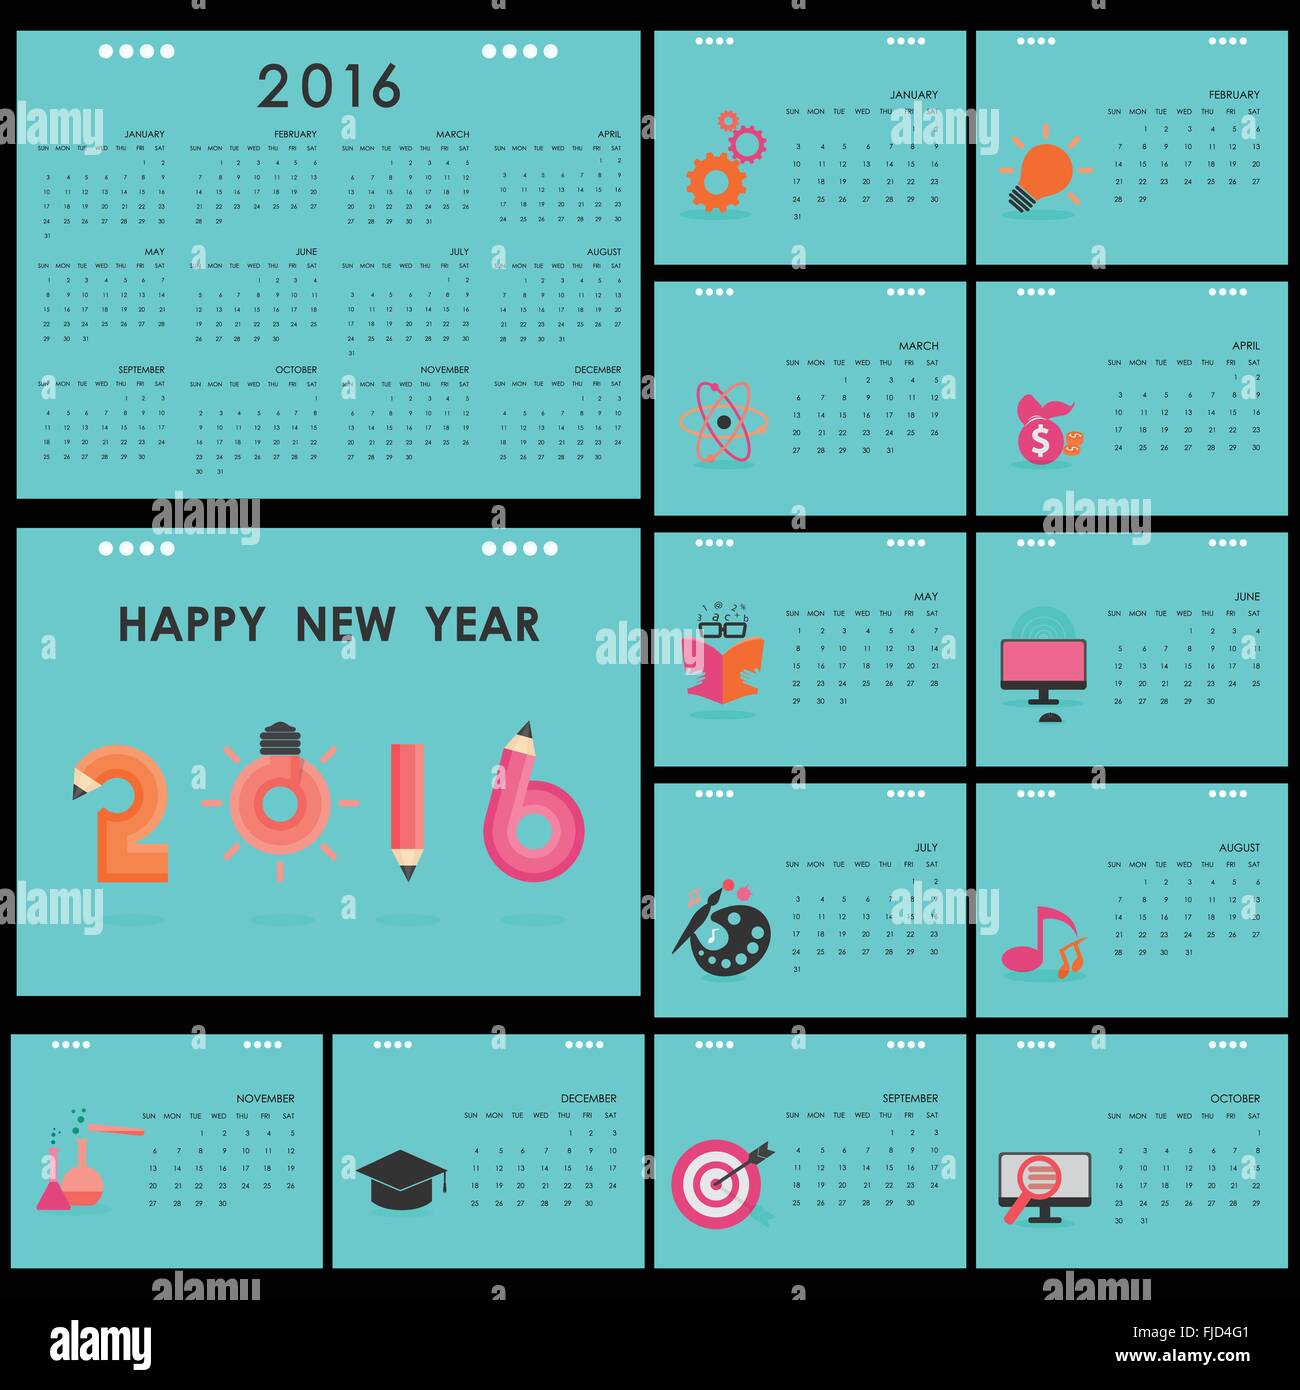 Business Calendar Template 2016